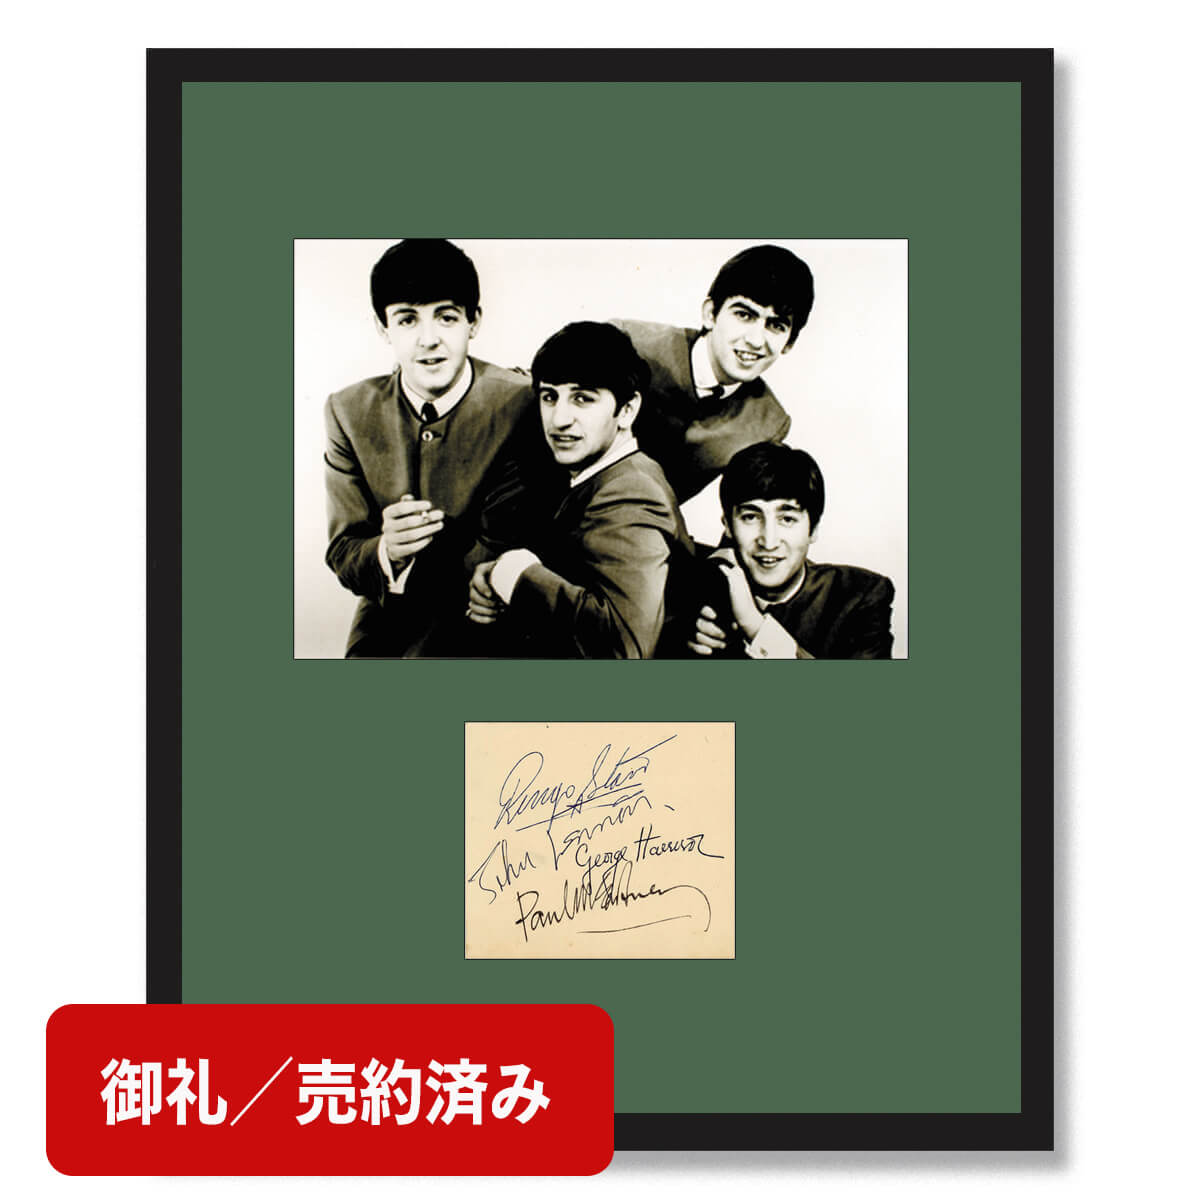 サイン額「ビートルズの直筆サイン - 1963年5月20日 」【証明書付 ...